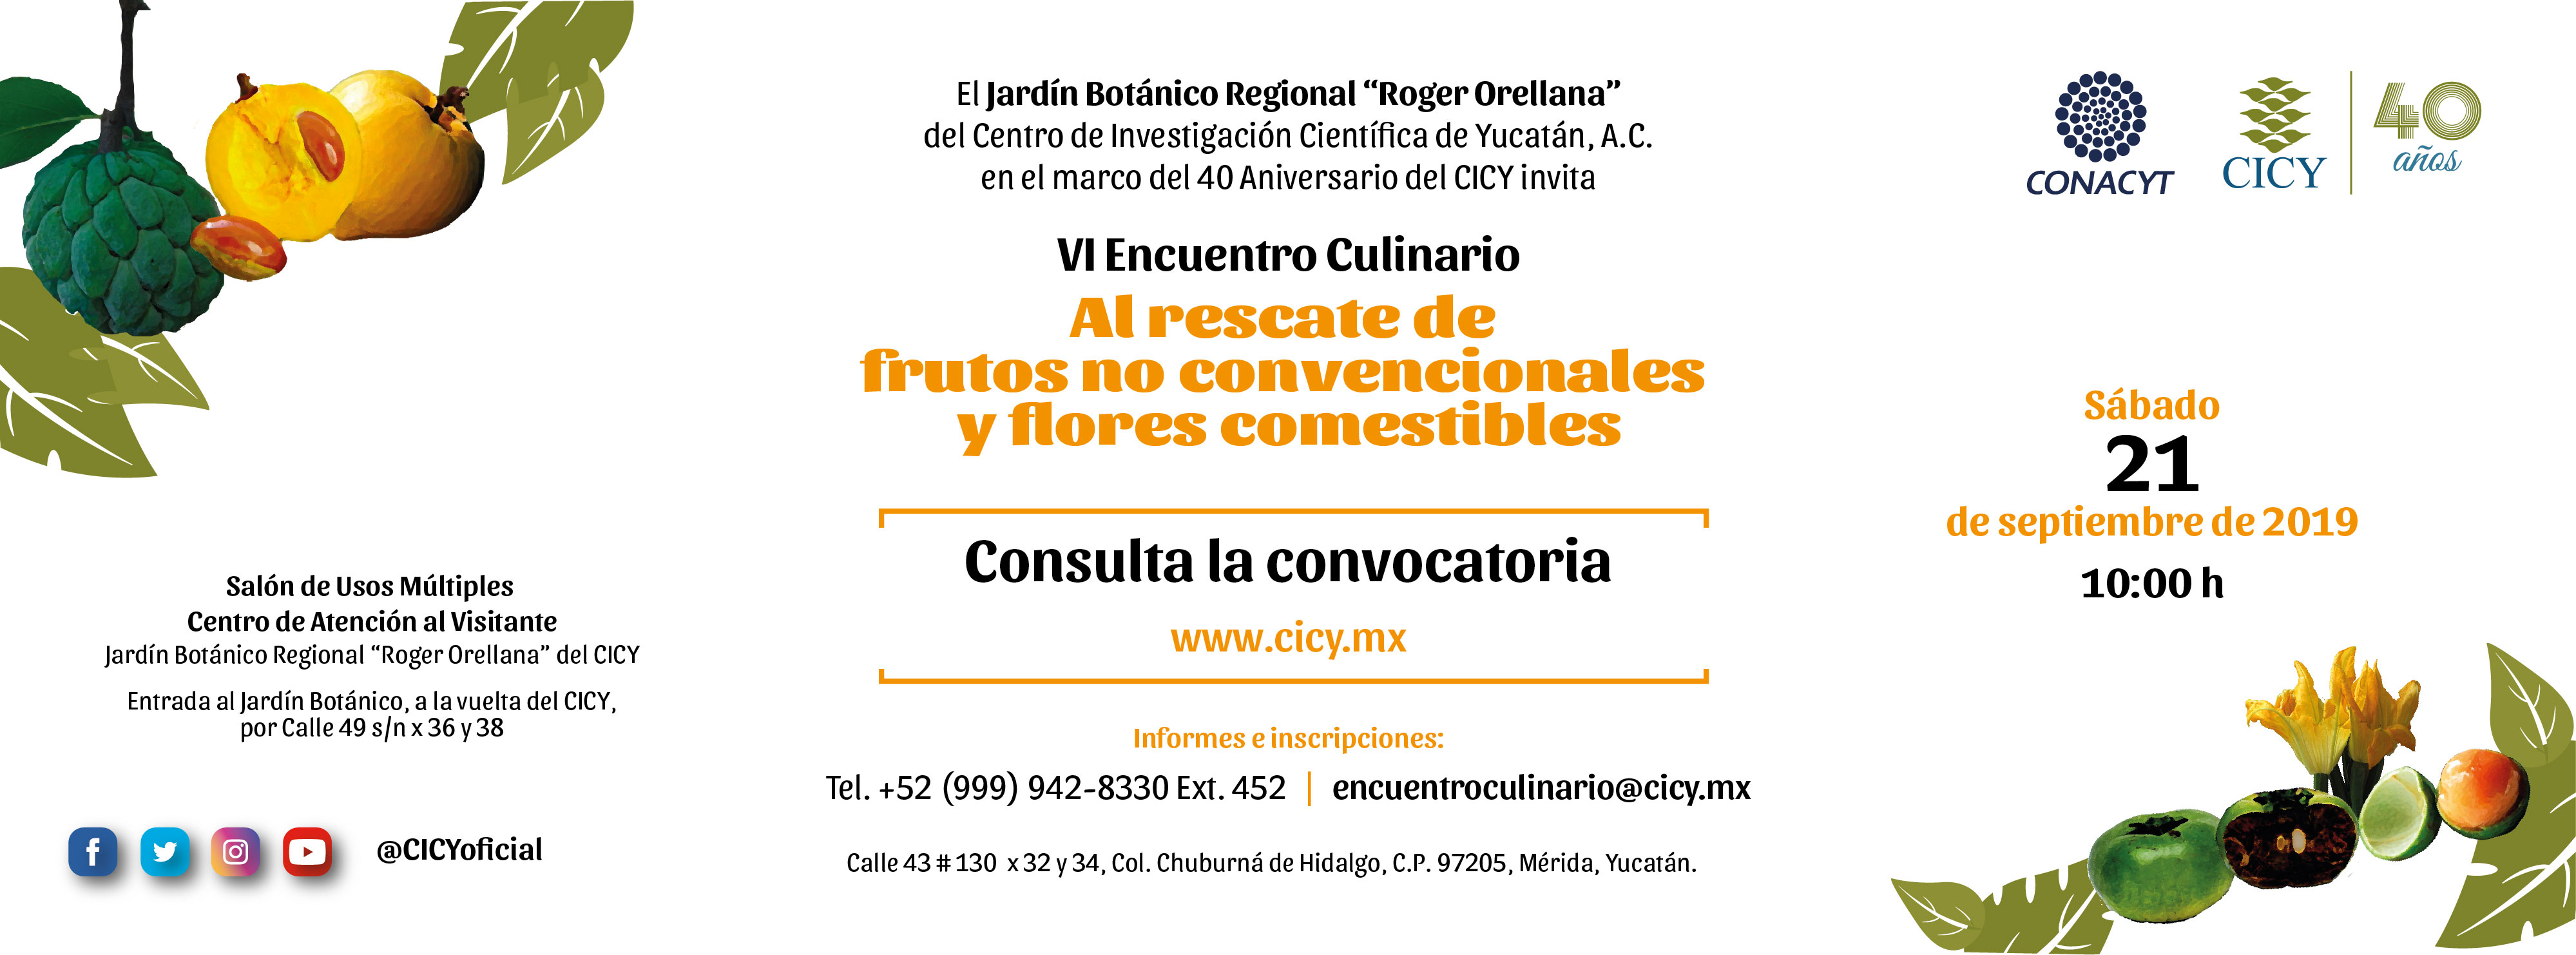 Encuentro Culinario 2019